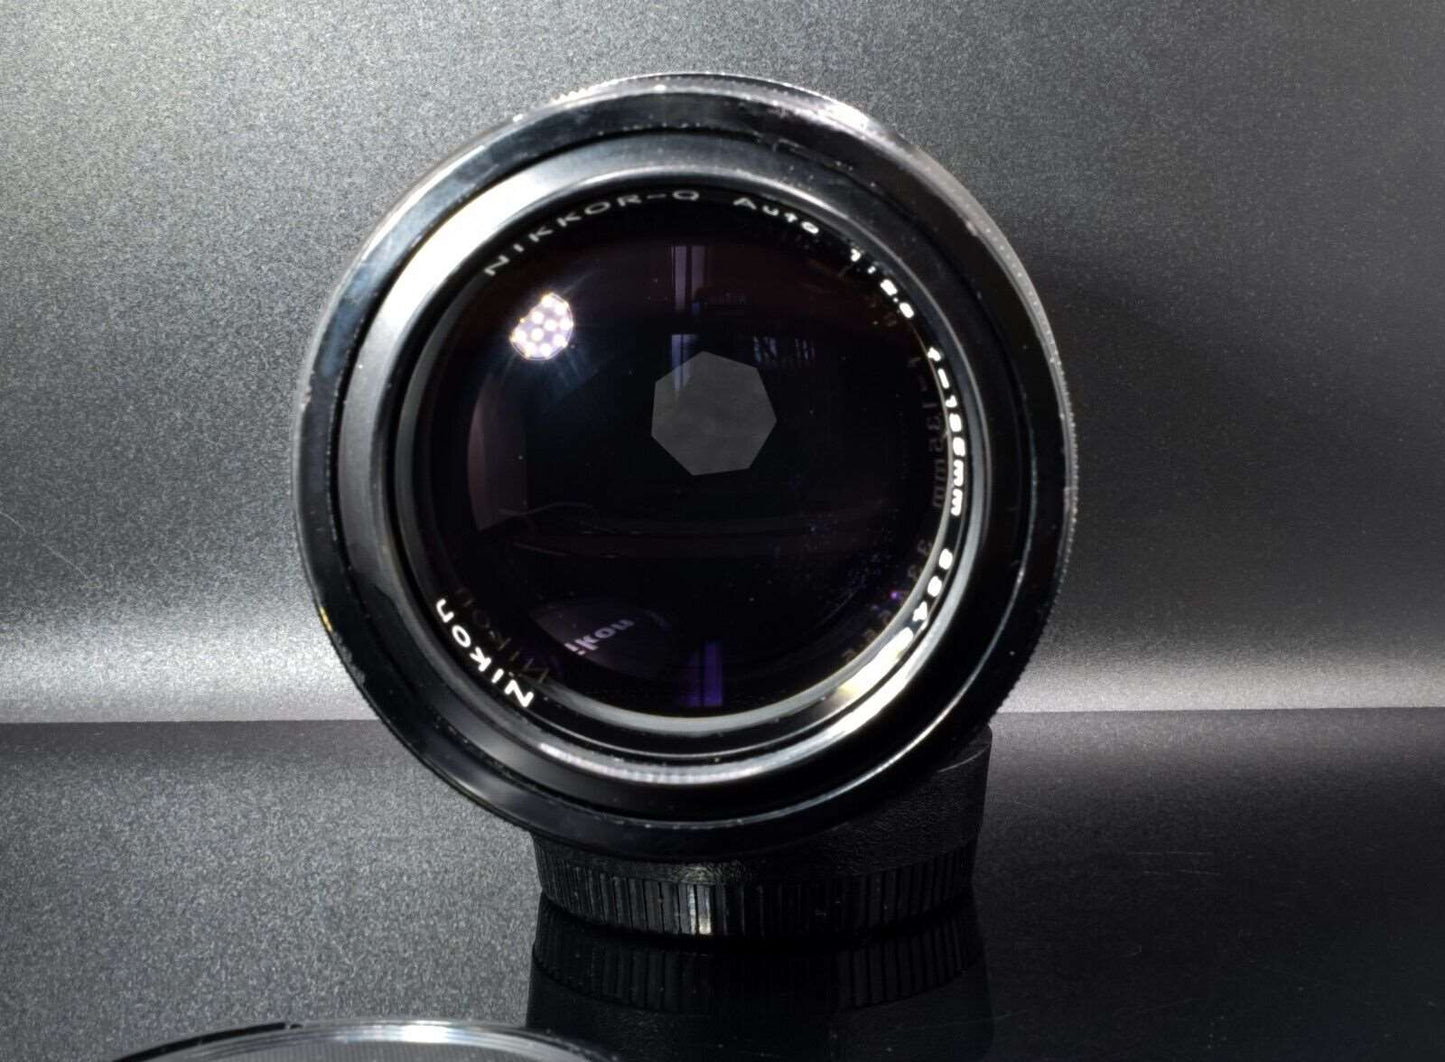 Nikon Nikkor Q 135mm f2.8 AI Camera Lens Retractable Hood Front Rear End Caps